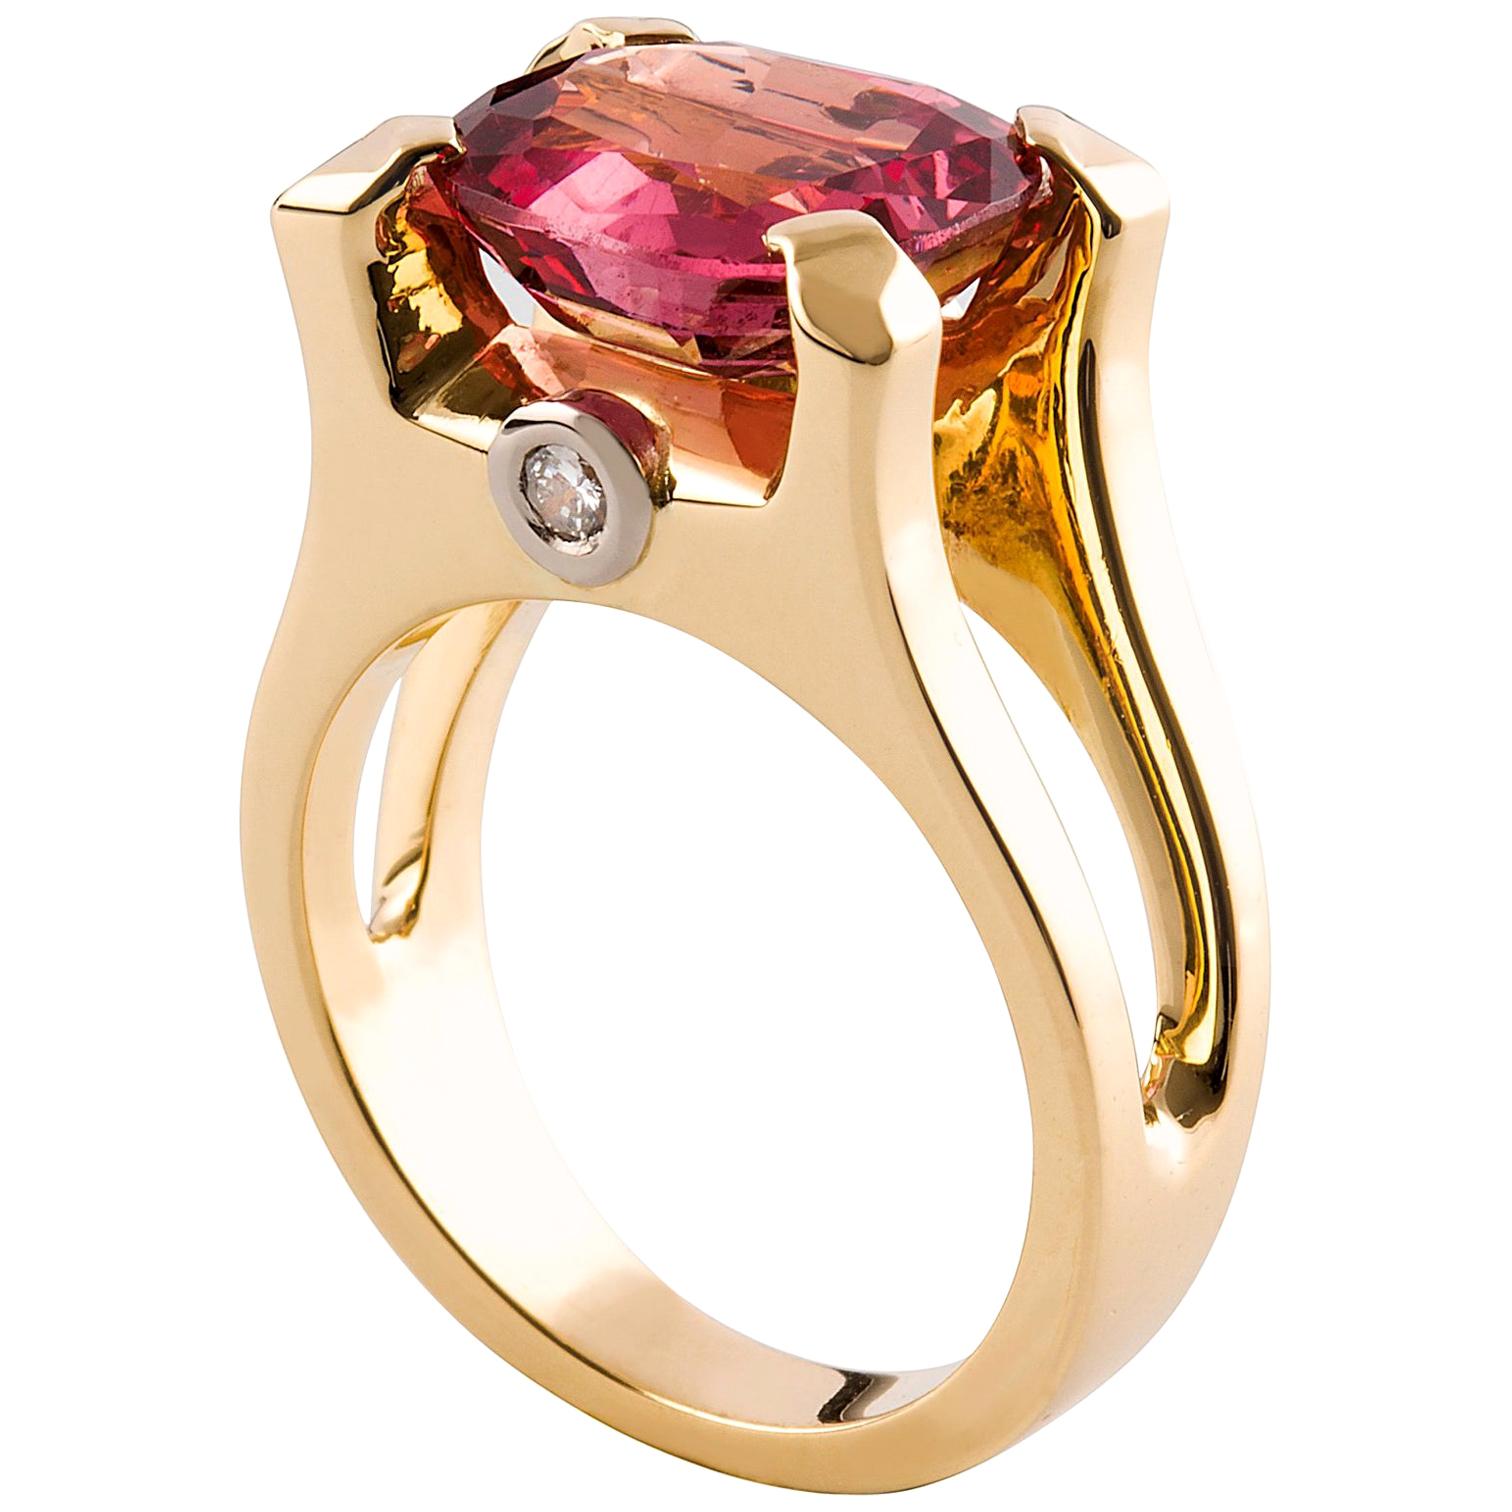 Kian Design 6.5 Carat Cushion Pink Spinle Diamond Cocktail Ring 18 Carat Gold